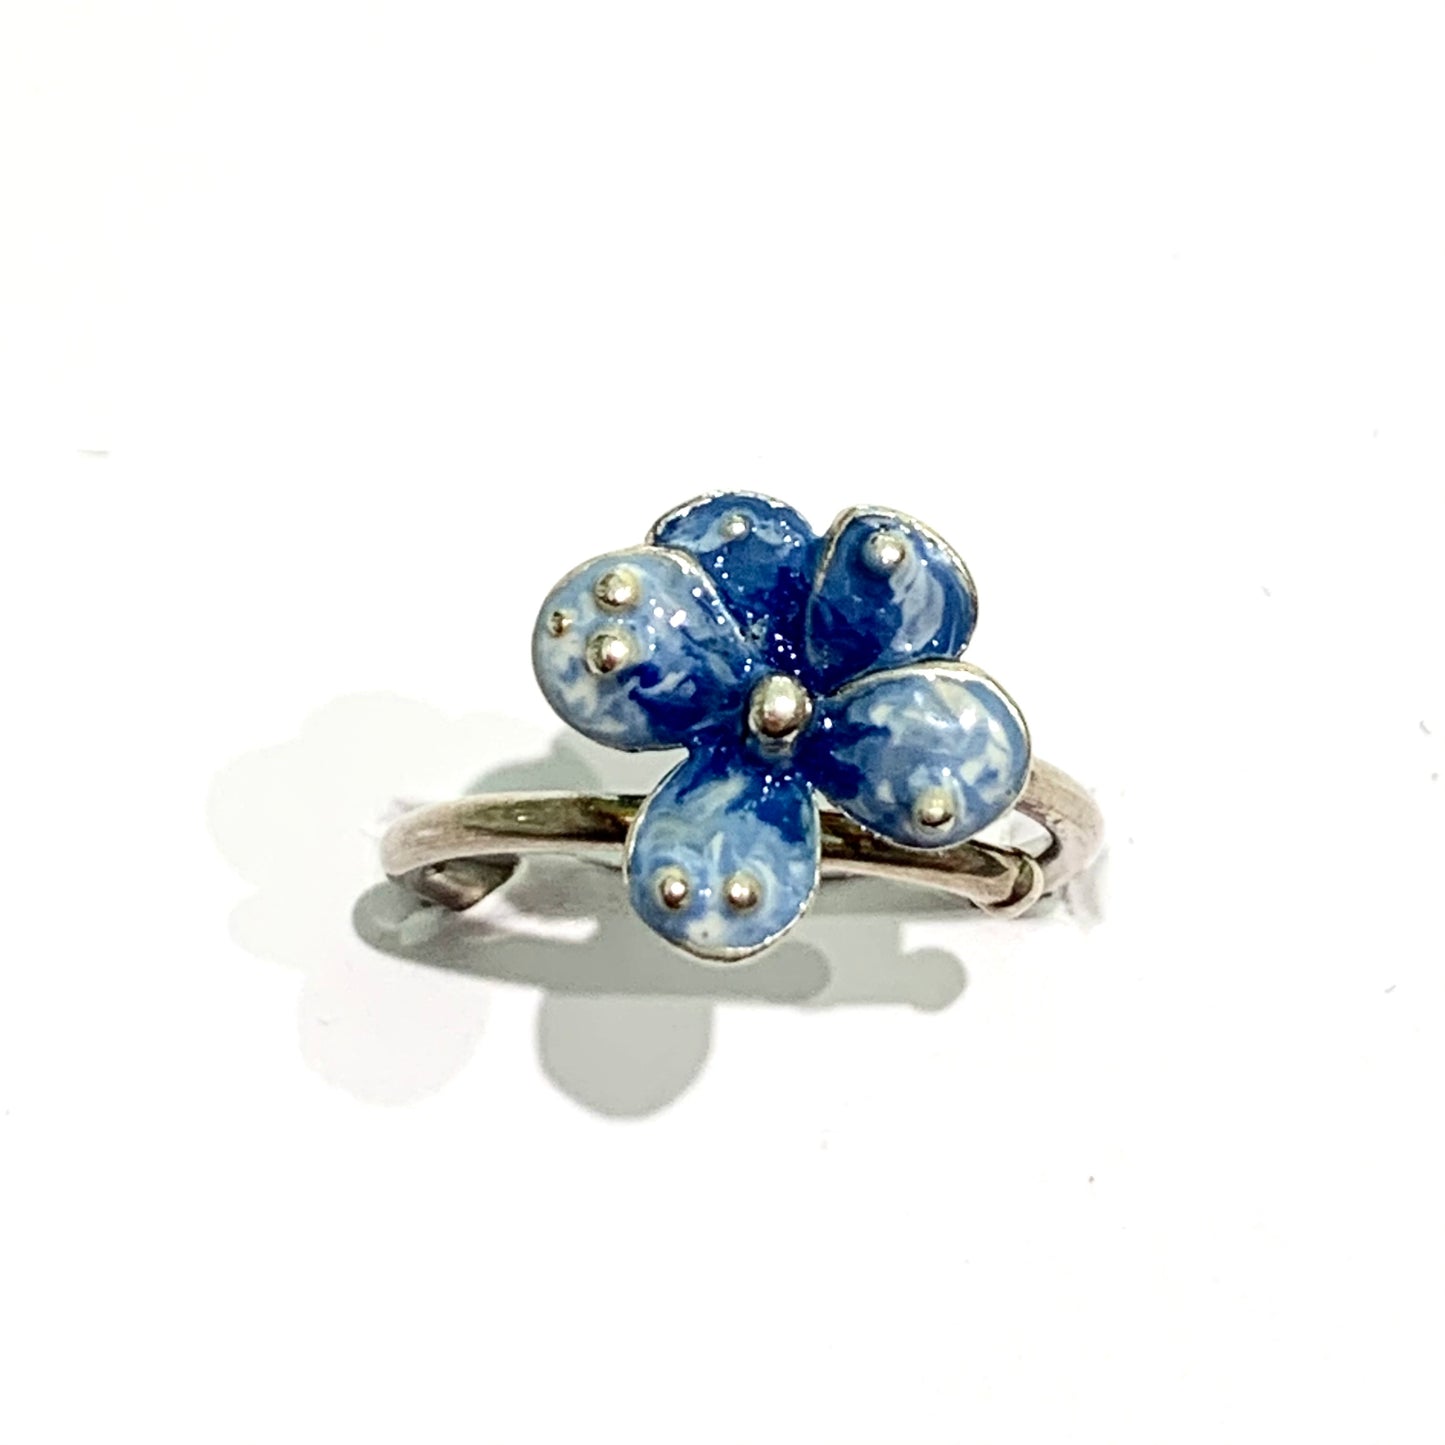 Anello in argento con violetta smaltata a mano con sfumature blu e azzurre.  Grandezza fiore 1,3 cm.  Misura regolabile da 12 a 16.